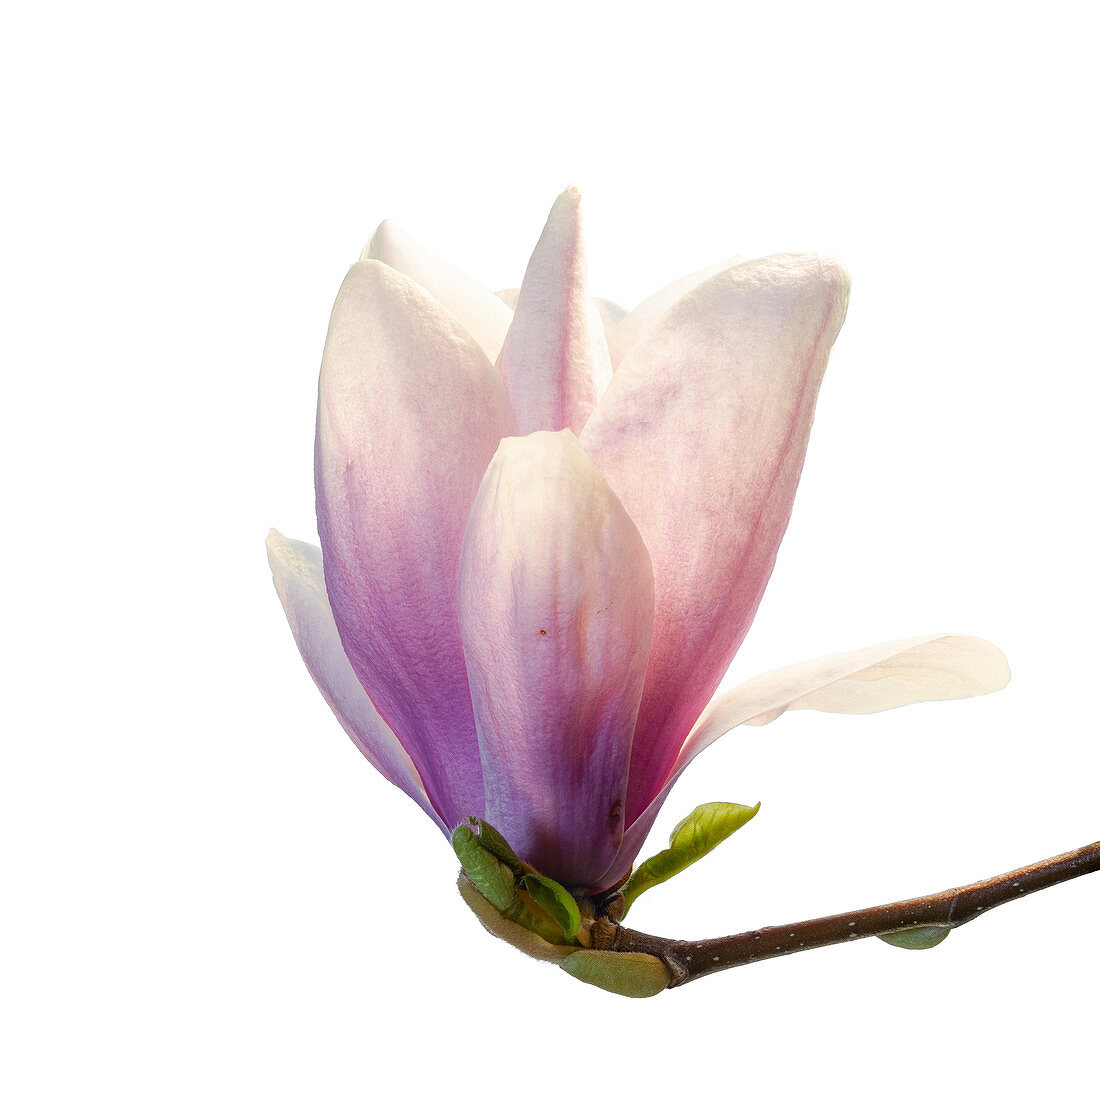 Saucer magnolia (Magnolia Ã? soulangeana) flower